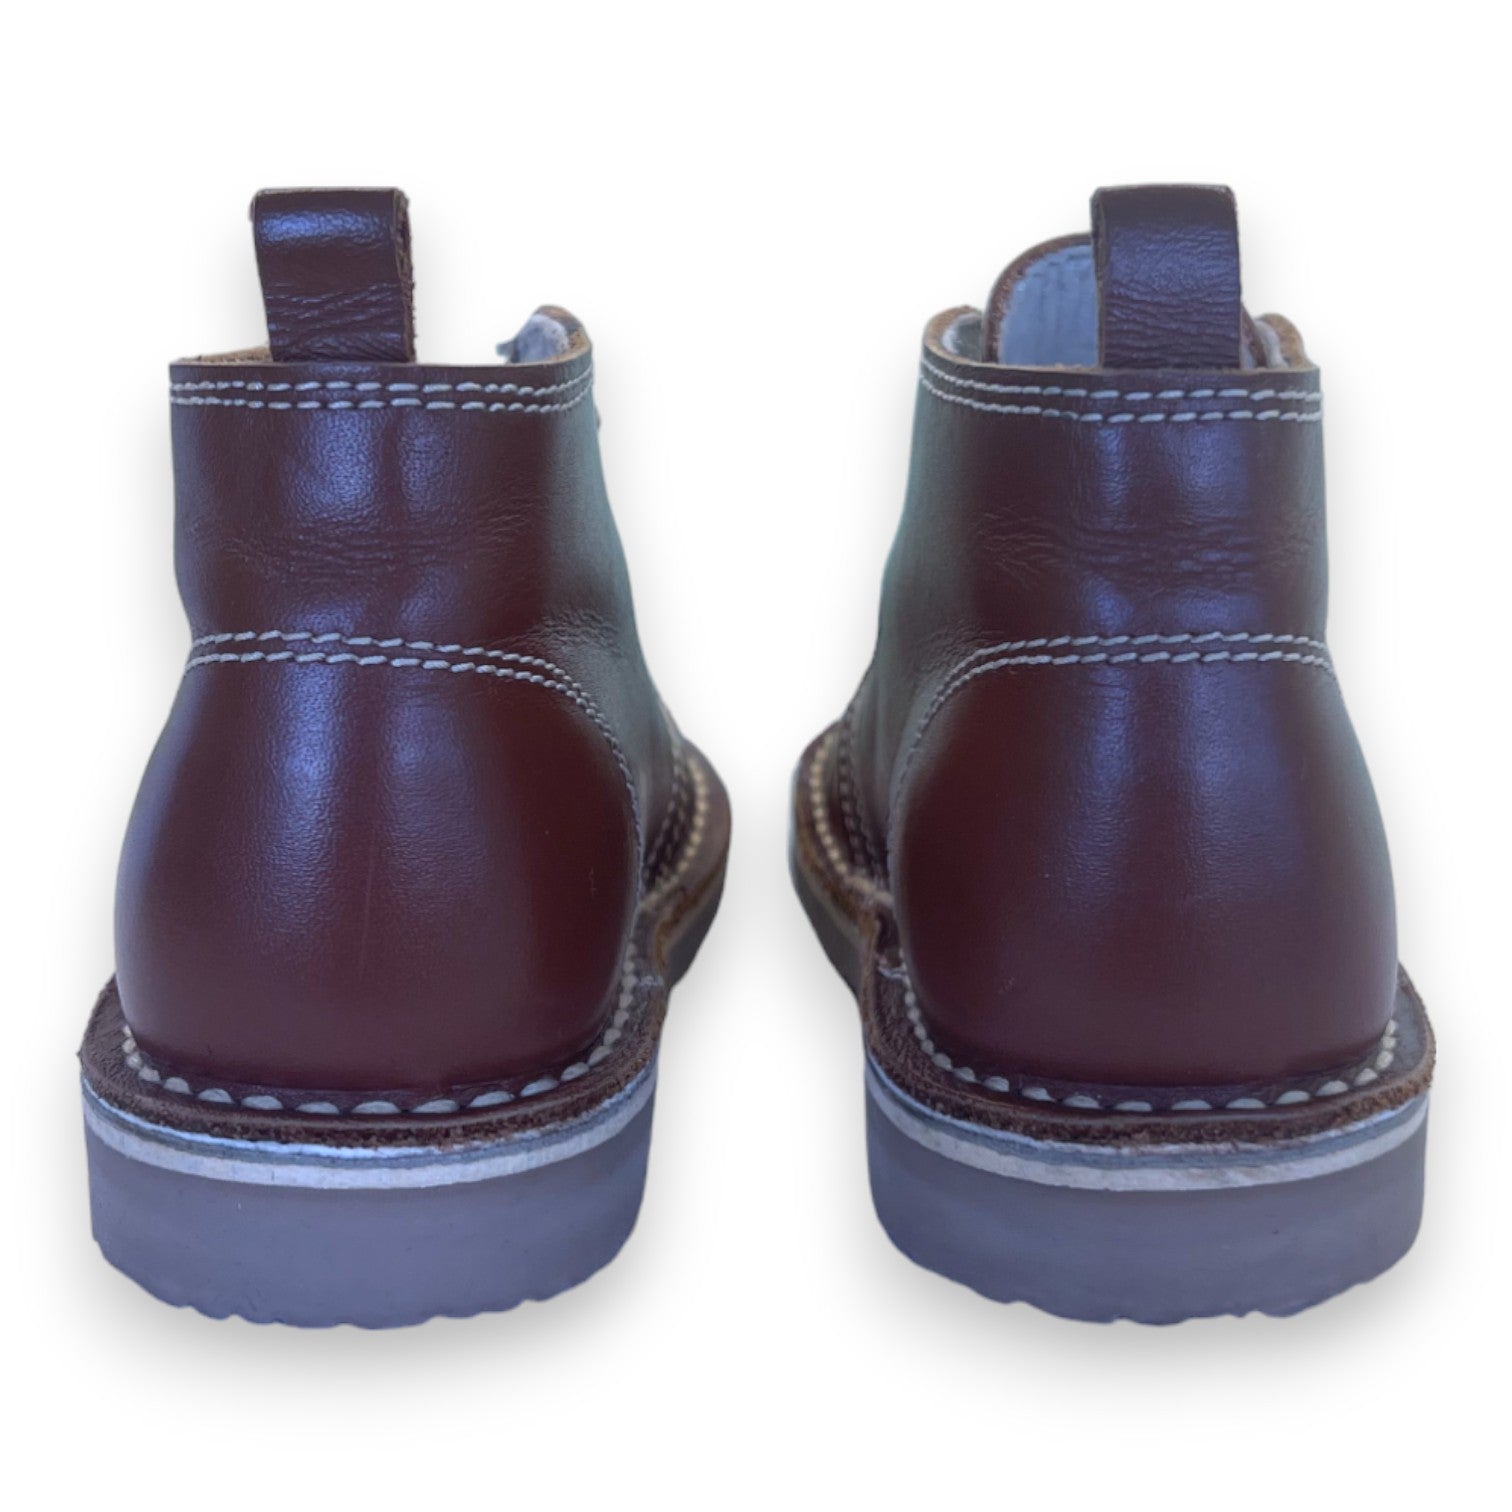 LA COQUETA - Chaussures en cuir marron à lacets - 24